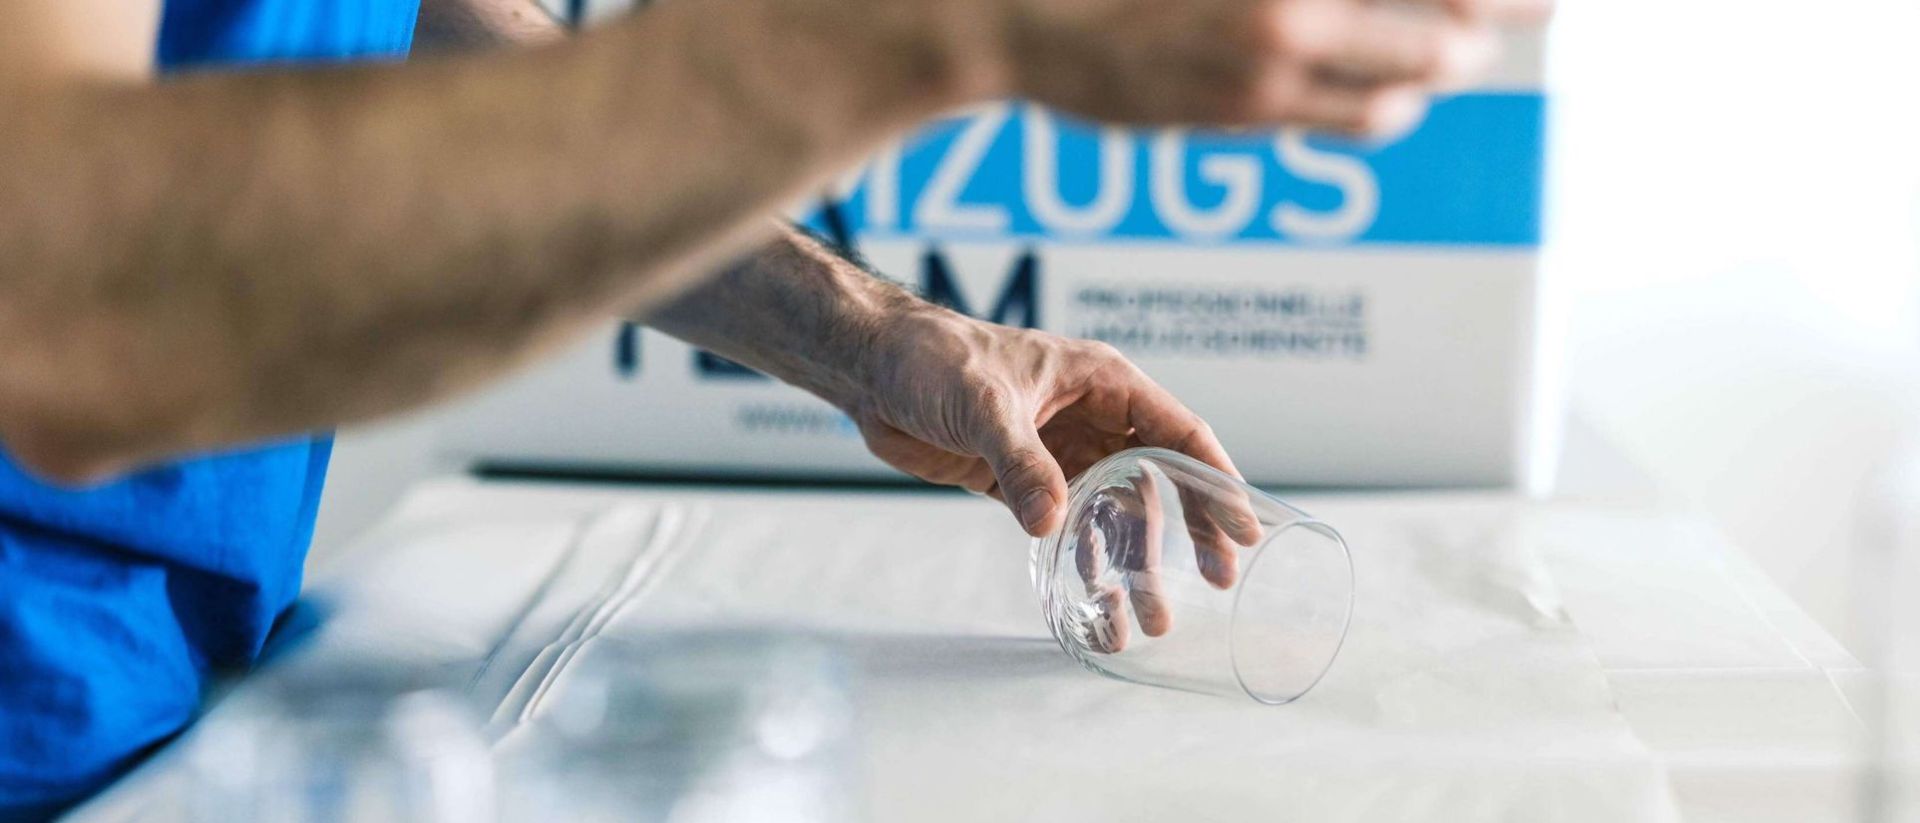 Möbelpacker packt Glas mit Papier ein fpr einen sicheren Transport. DasUmzugsteam